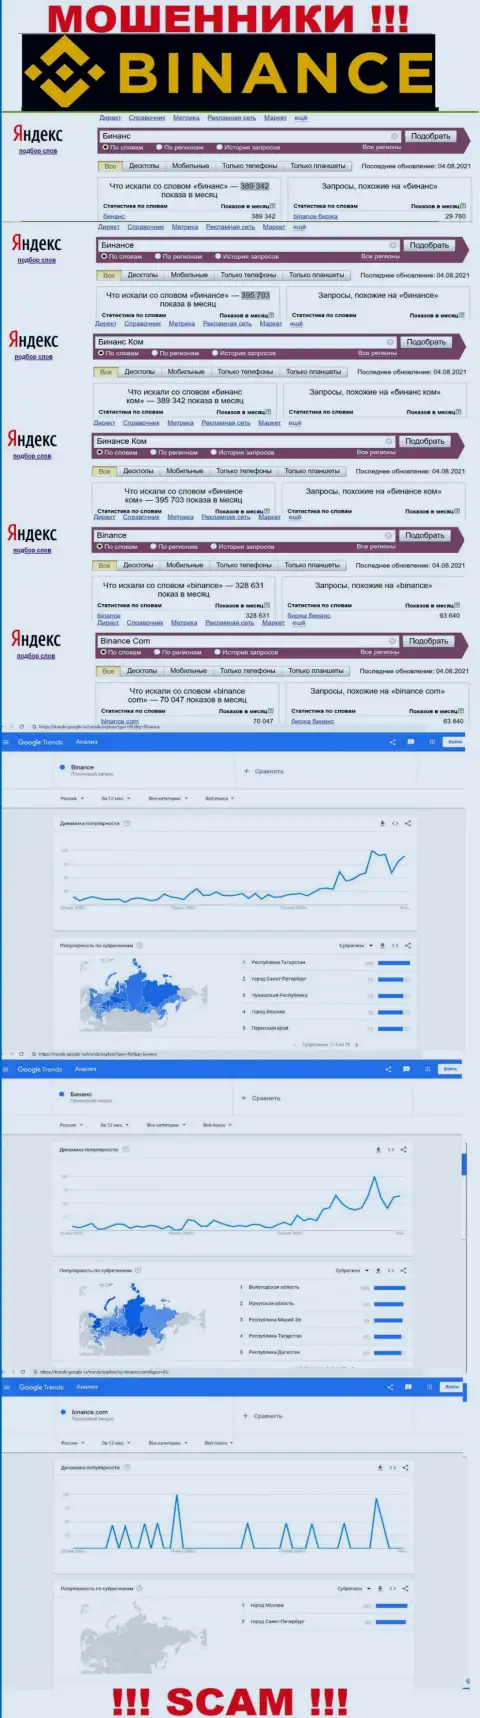 Статистические данные о запросах в поисковиках всемирной паутины данных о конторе Бинанс